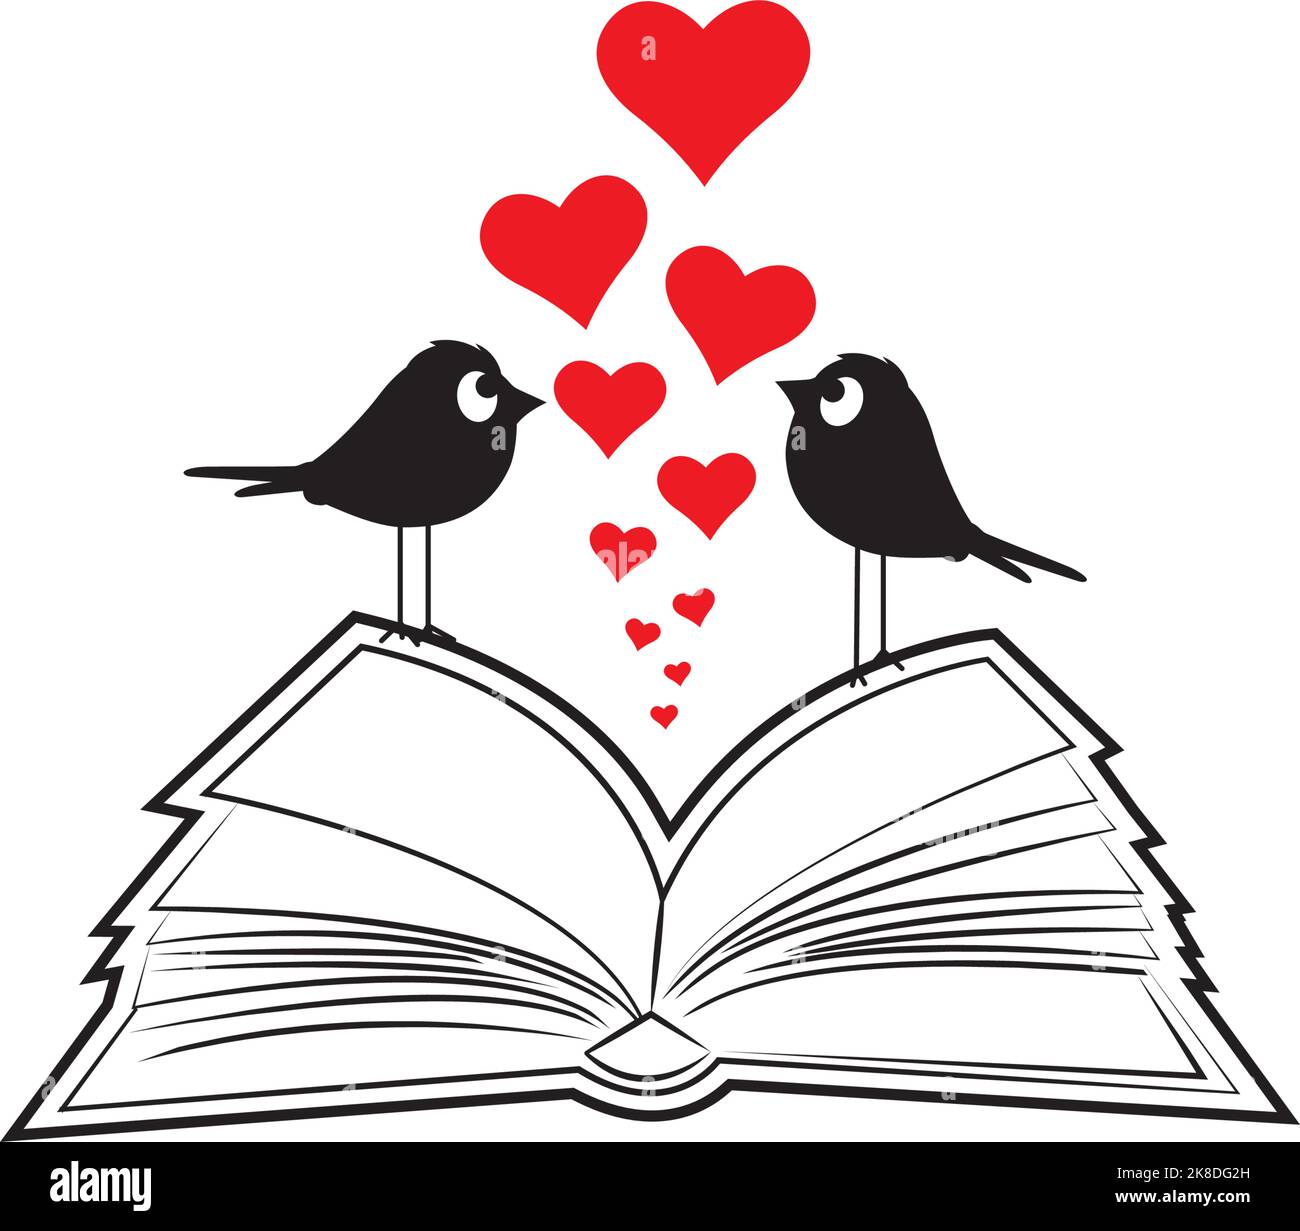 Illustration de livre ouvert et silhouettes de couple d'oiseaux, vecteur. Illustration de dessin animé isolée sur fond blanc Illustration de Vecteur